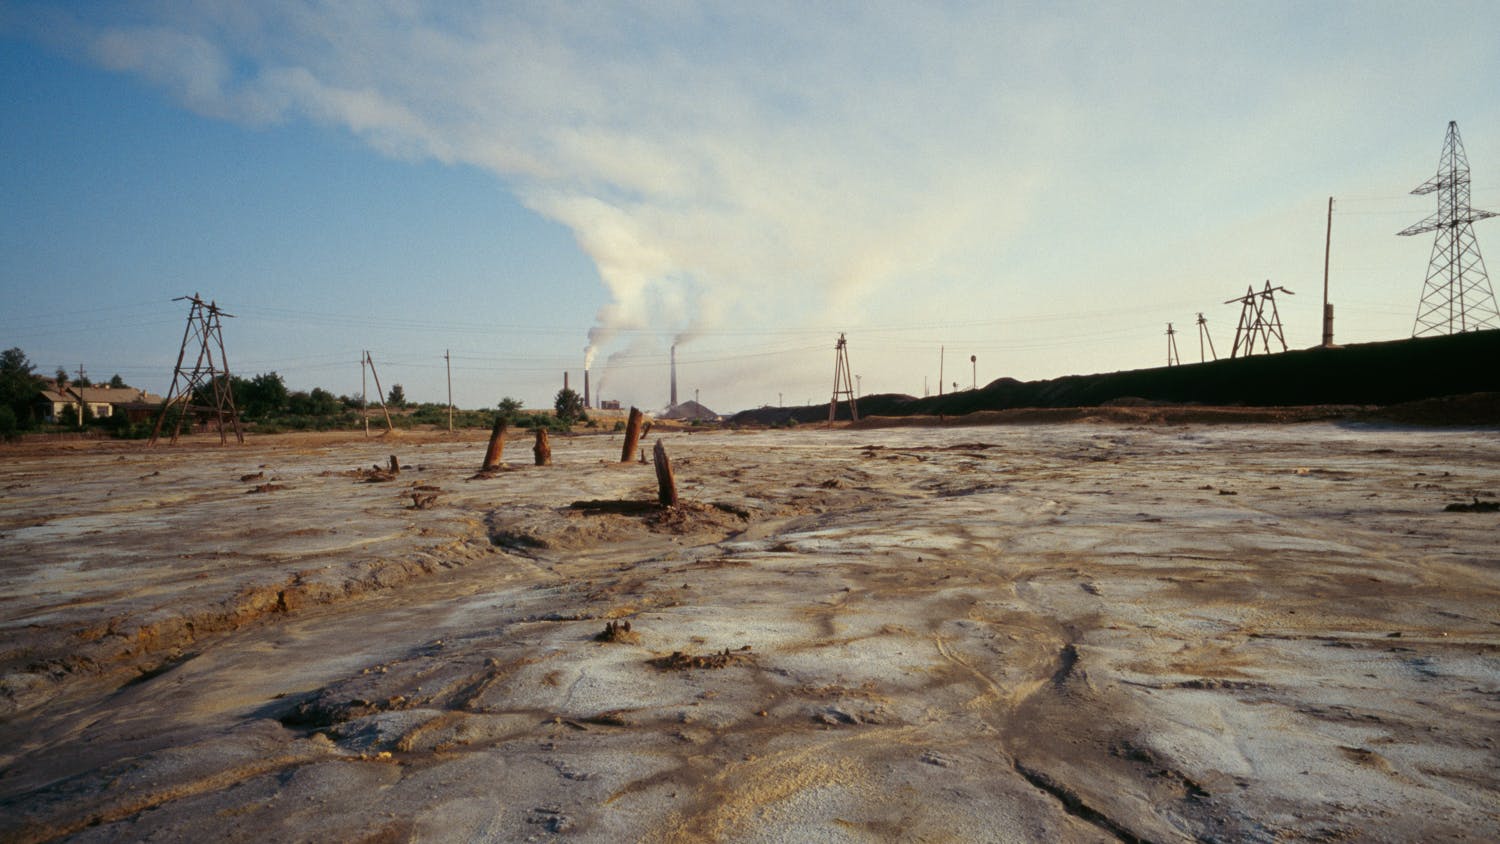 Ein erodierter Boden, einer Mondlandschaft gleich, mit stark rauchendem Schornstein im Hintergrund. Umweltverschmutzung in der Provinz Tscheljabinsk. Der Boden ist durch hohe Konzentrationen von Blei, Arsen, Nickel, Kobalt, Kadmium vergiftet.